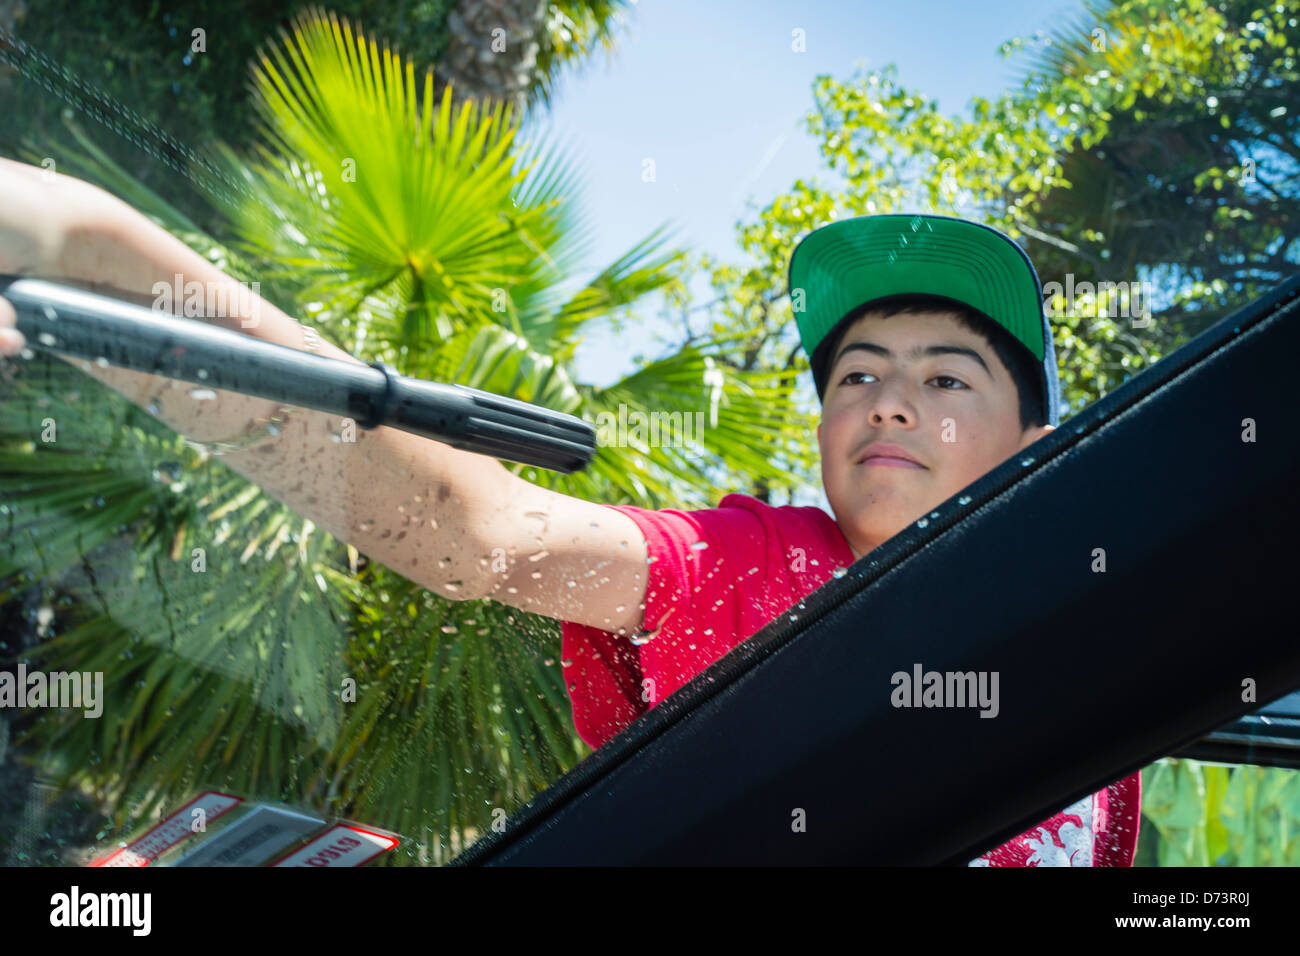 Männliche Teenager in eine Baseball-Cap verwendet eine Rakel ein Fenster eines Autos in einer High-School-Fundraising-Autowaschanlage zu trocknen. Stockfoto